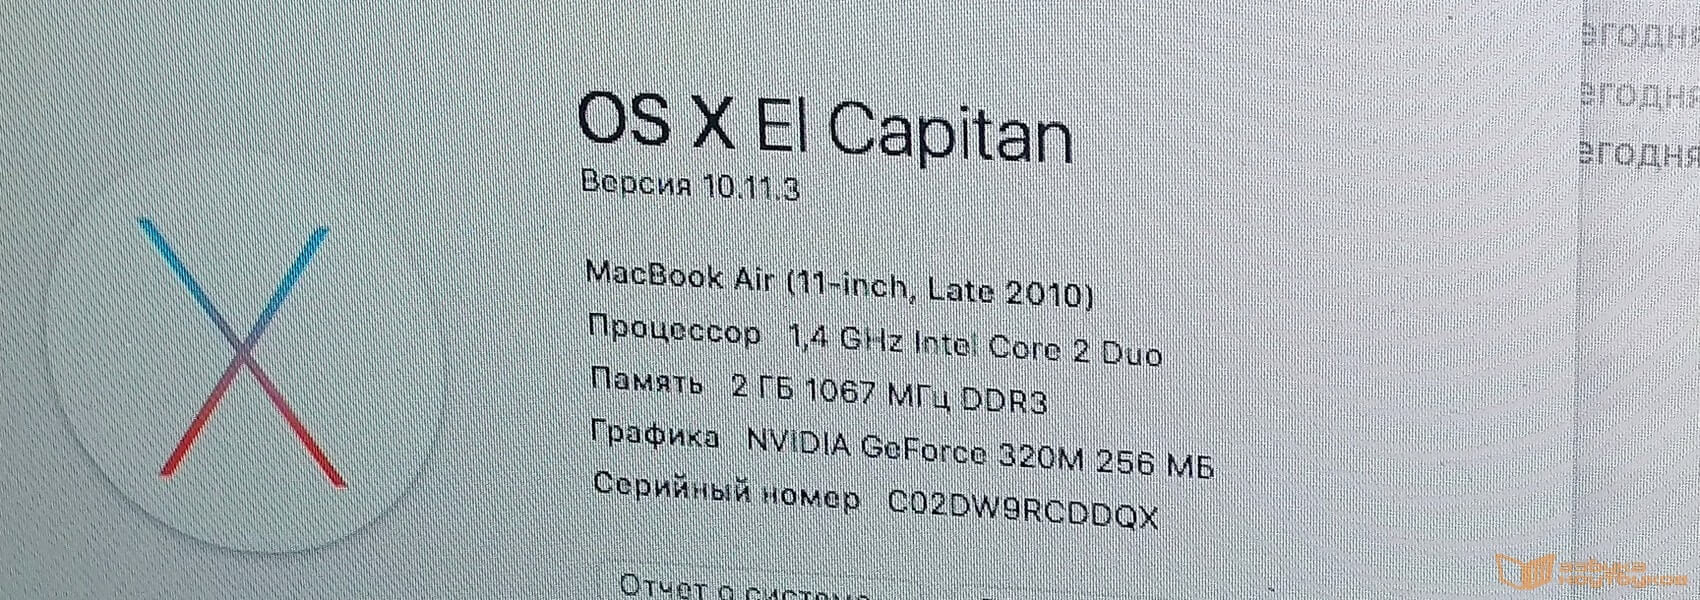 Фото изначальной конфигурации macbook air A1370 2010